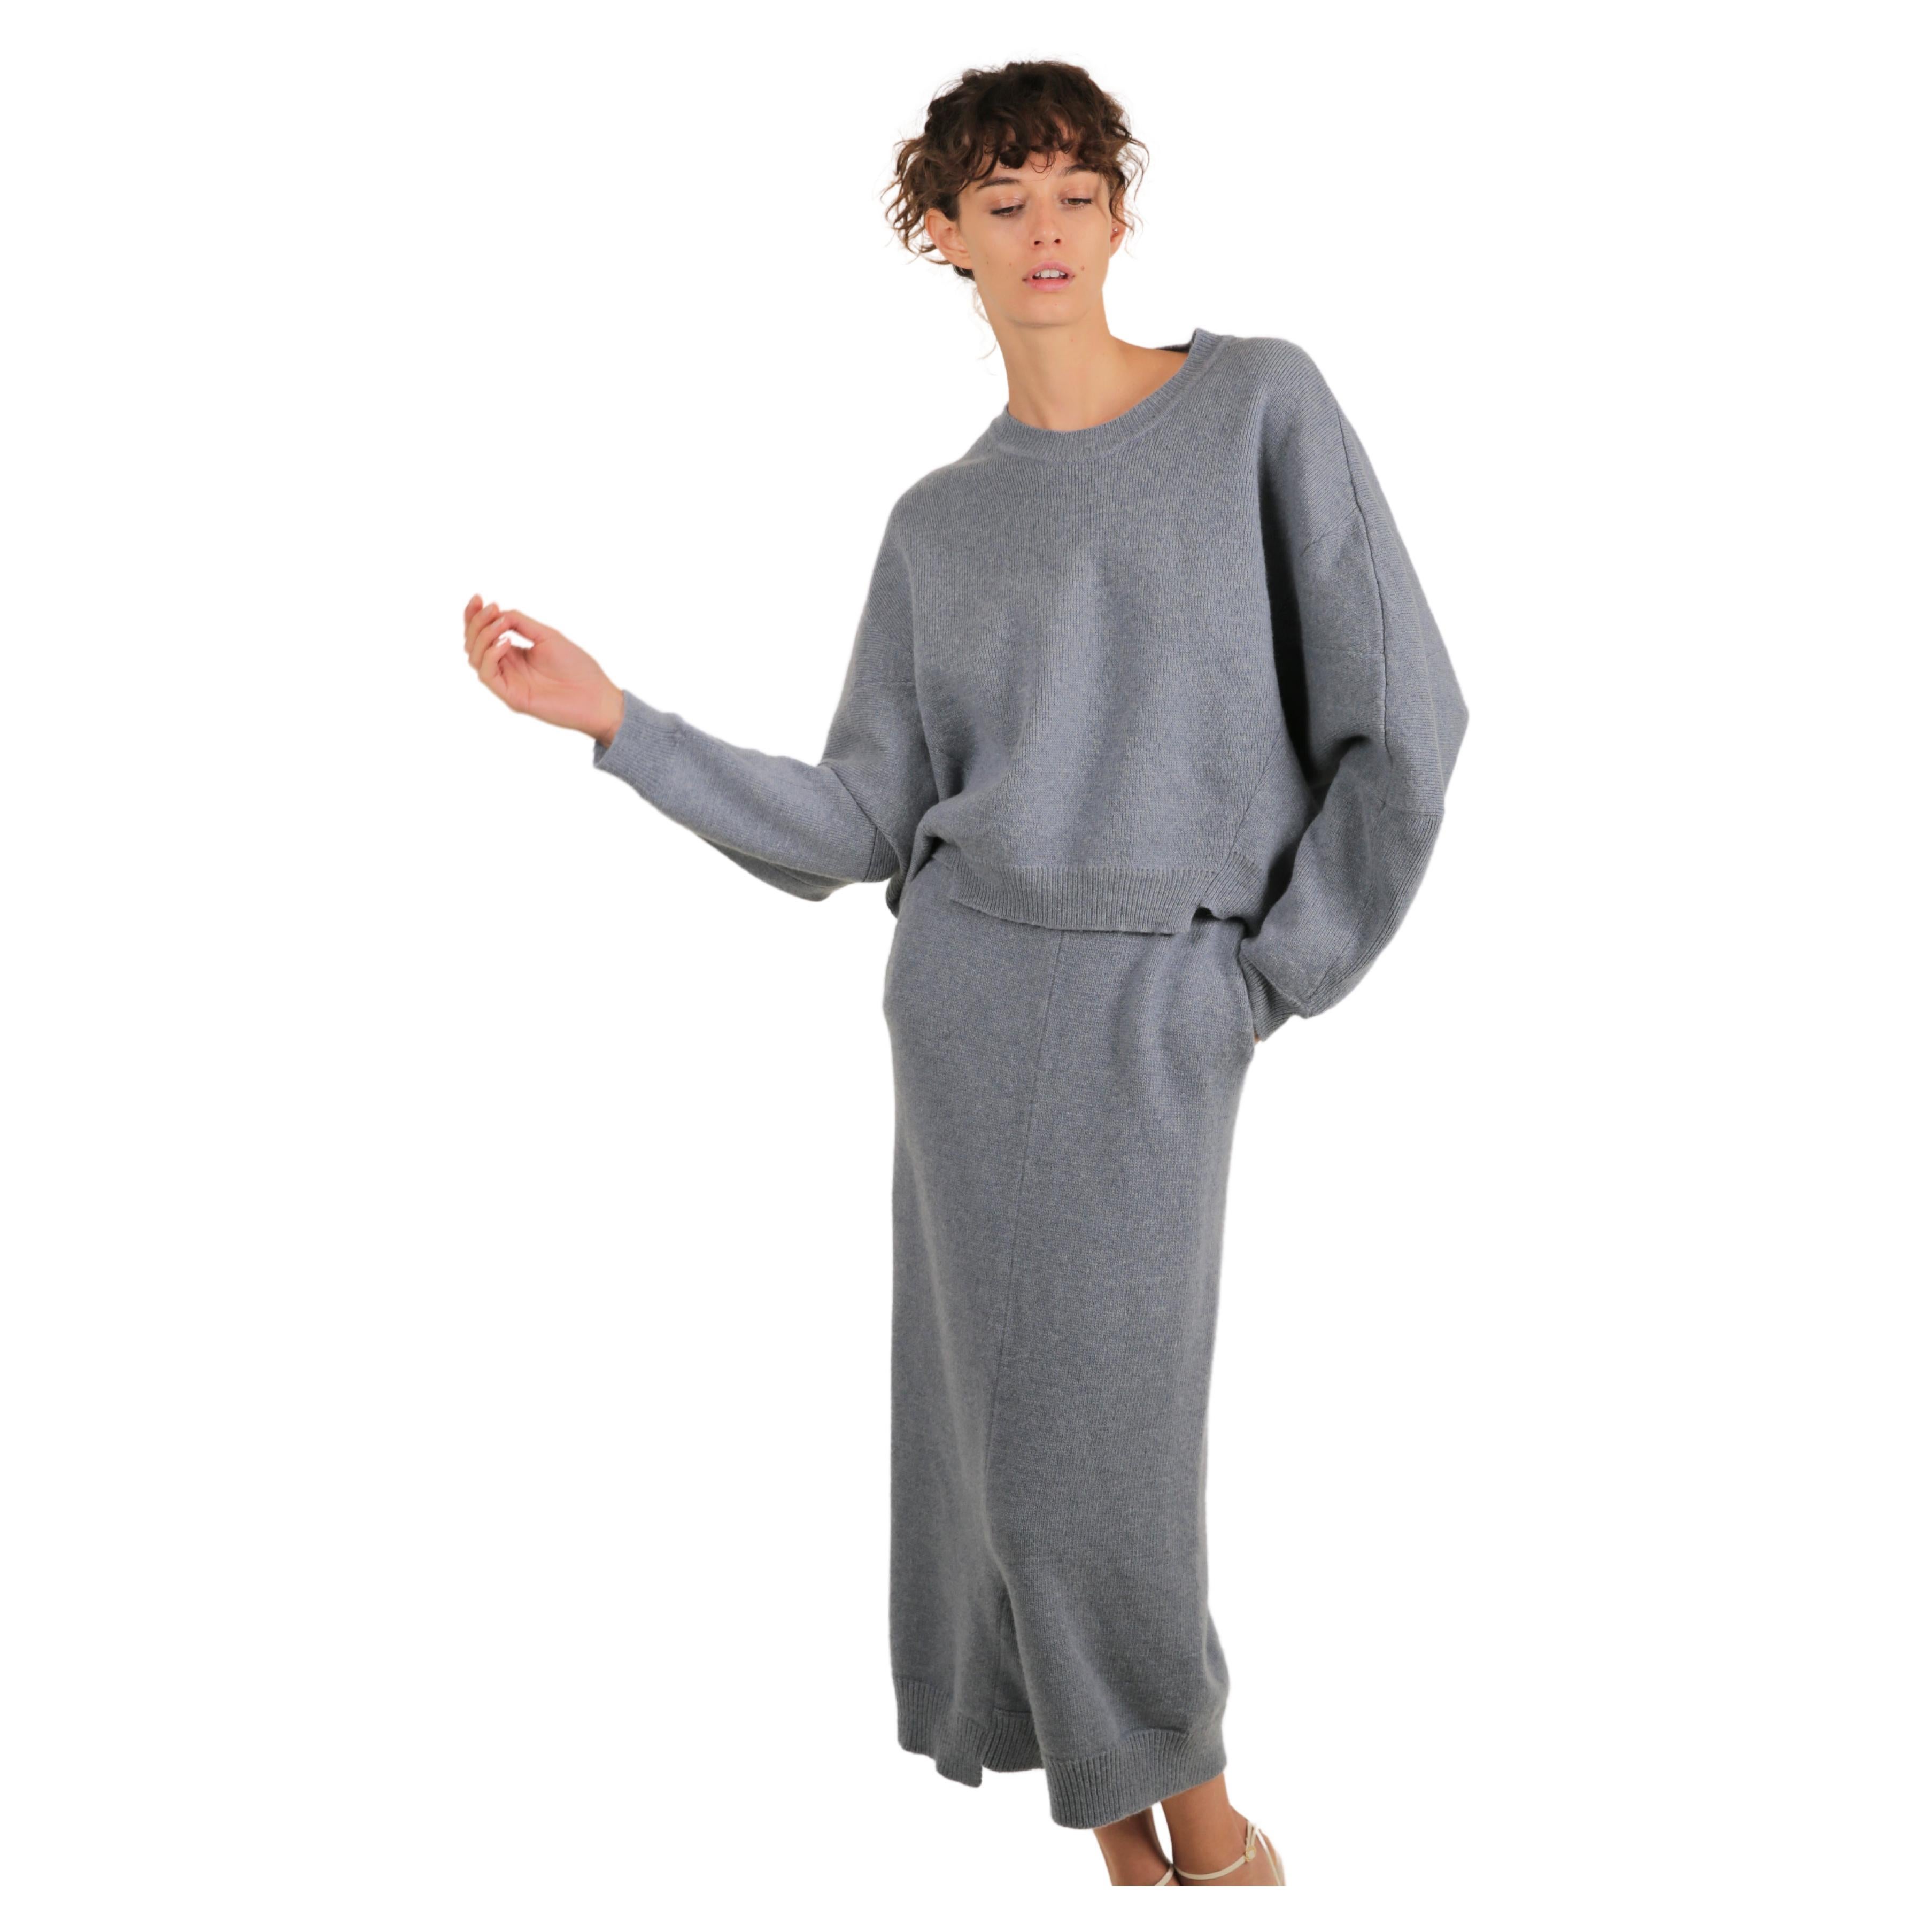 Stella McCartney Fall18 blue oversized wool alpaca matching sweater dress pants For Sale